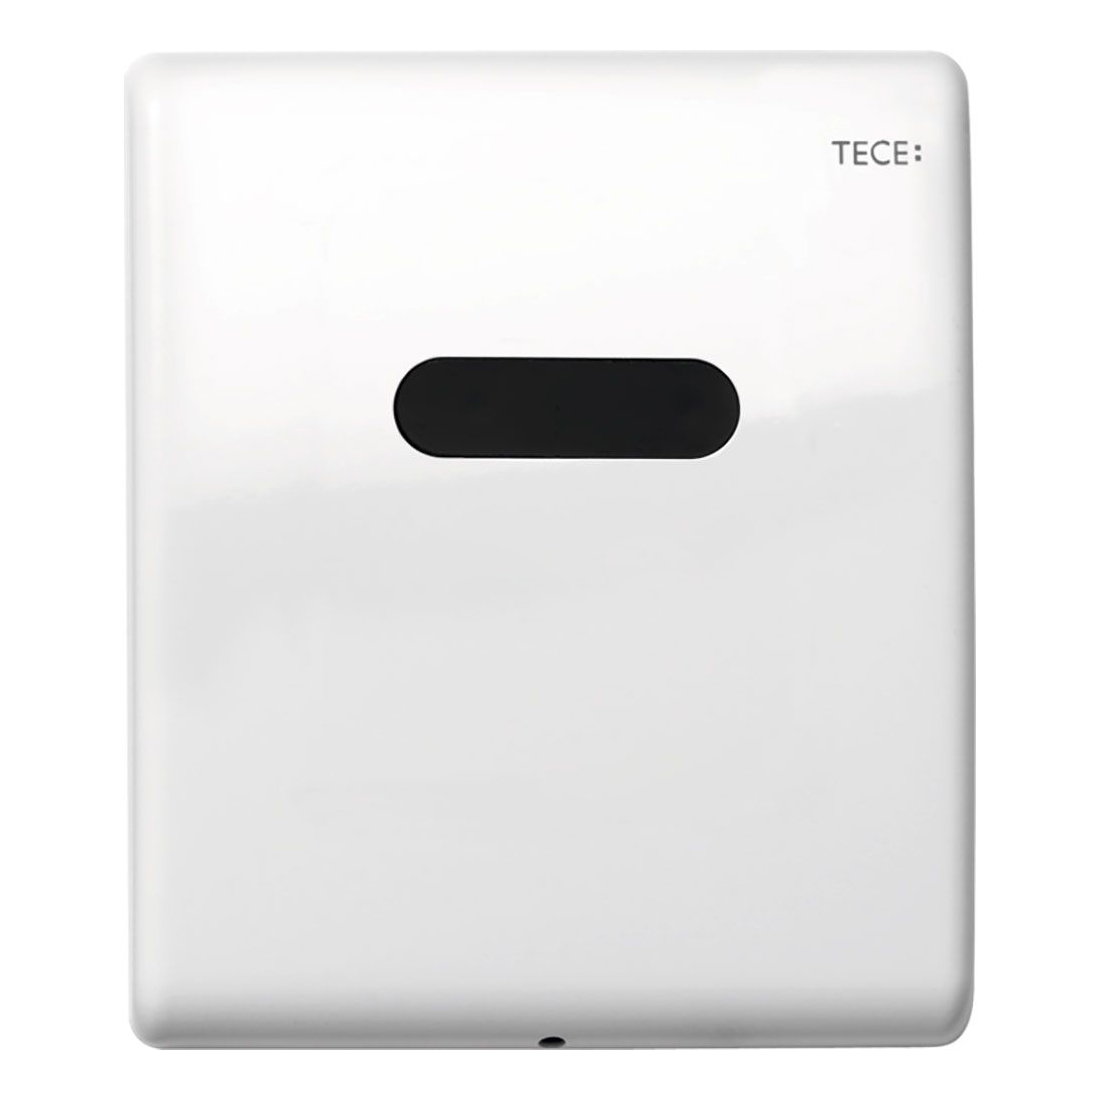 Кнопка для инсталляции Tece TECEplanus Urinal 9242356, 6 V батарея, белая глянцевая кнопка для инсталляции tece teceplanus 9240351 бесконтактная питание от батареи 6 в глянцевый хром